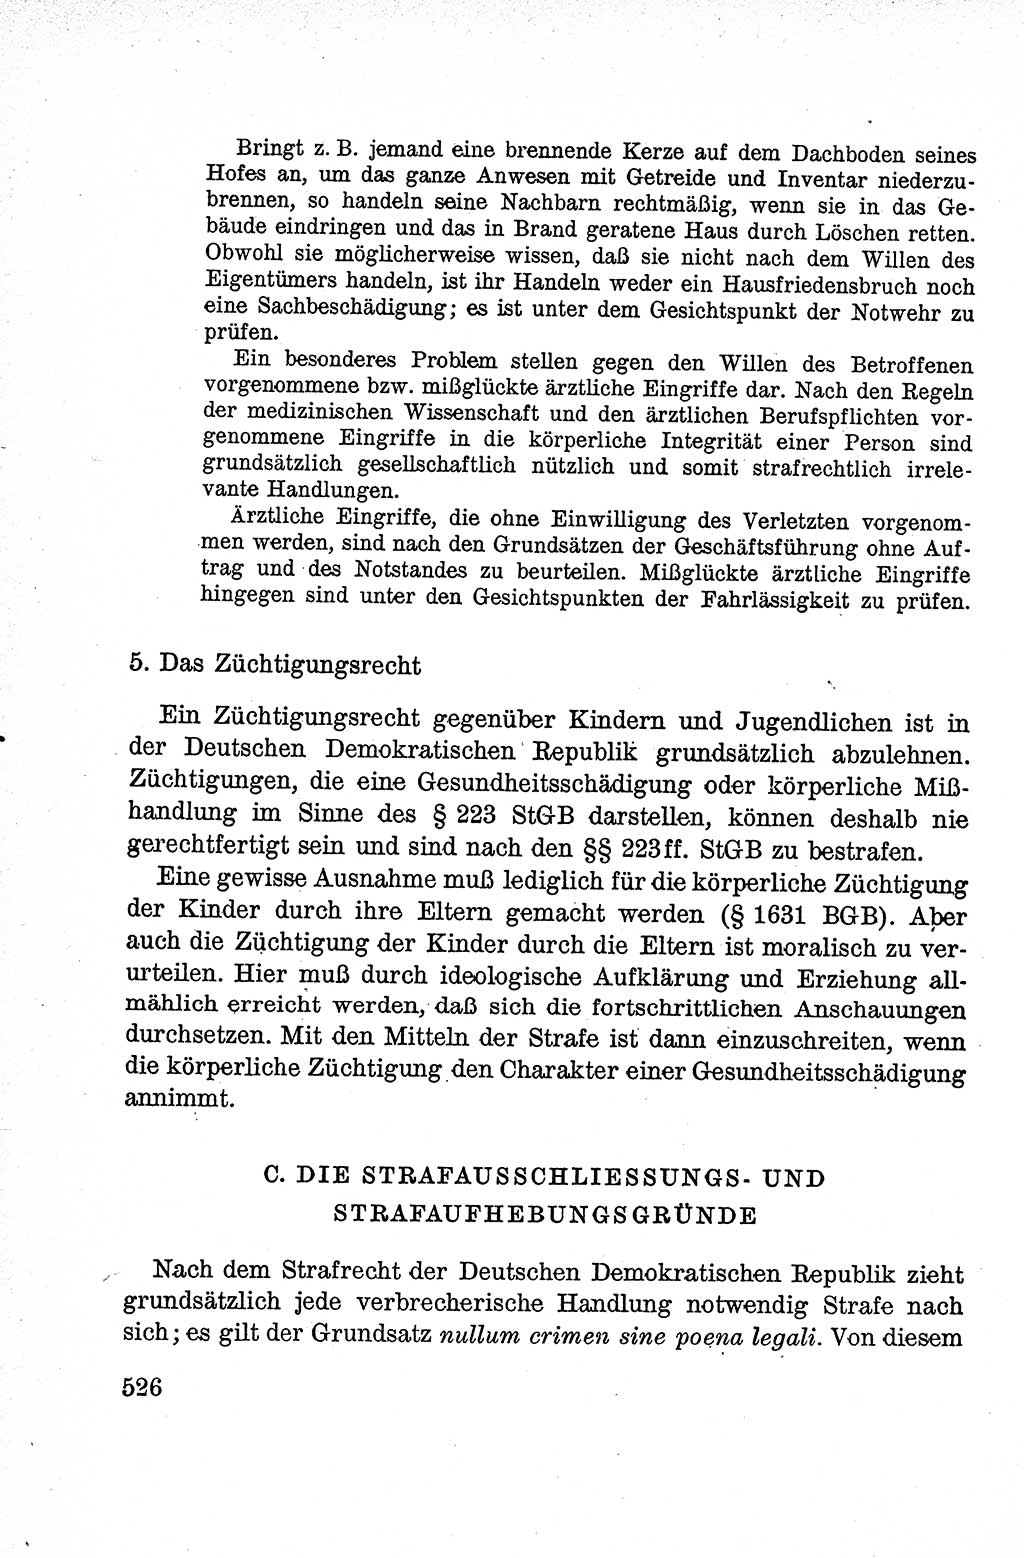 Lehrbuch des Strafrechts der Deutschen Demokratischen Republik (DDR), Allgemeiner Teil 1959, Seite 526 (Lb. Strafr. DDR AT 1959, S. 526)